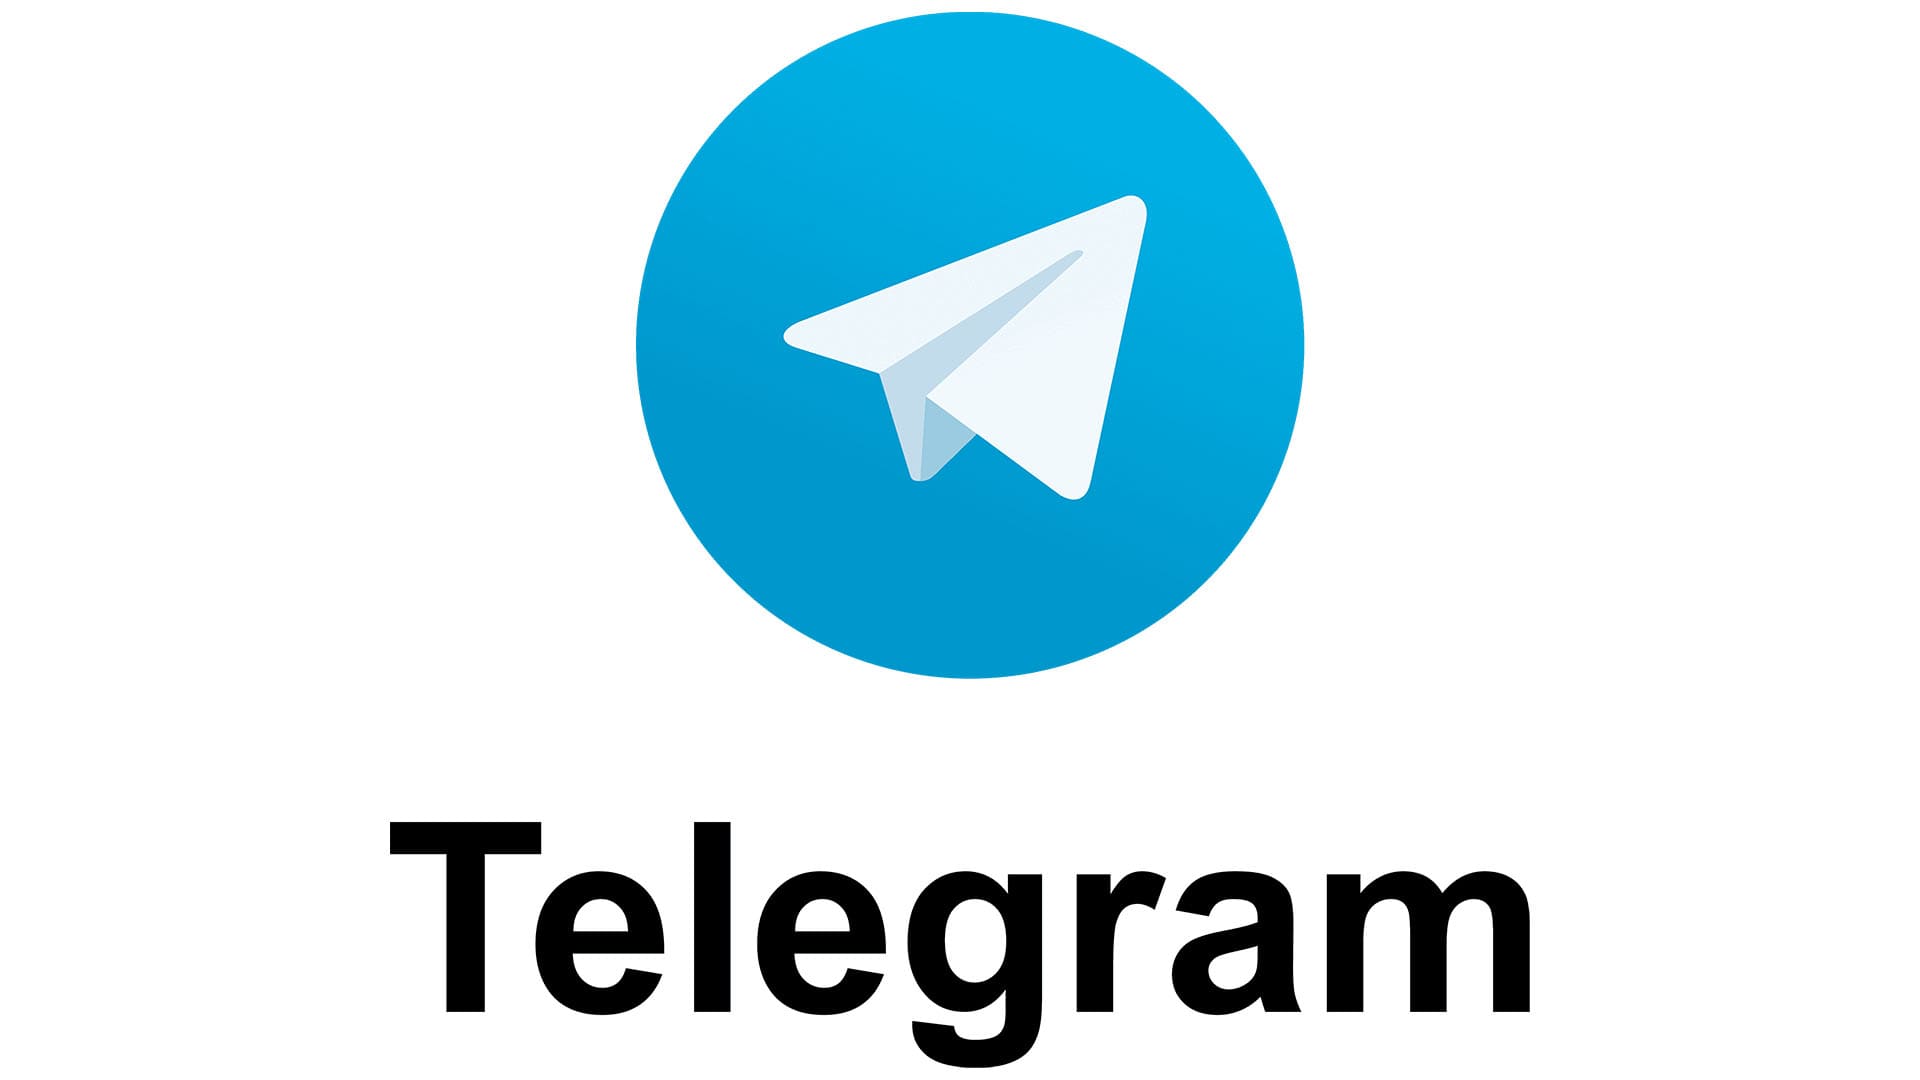 who invented telegram